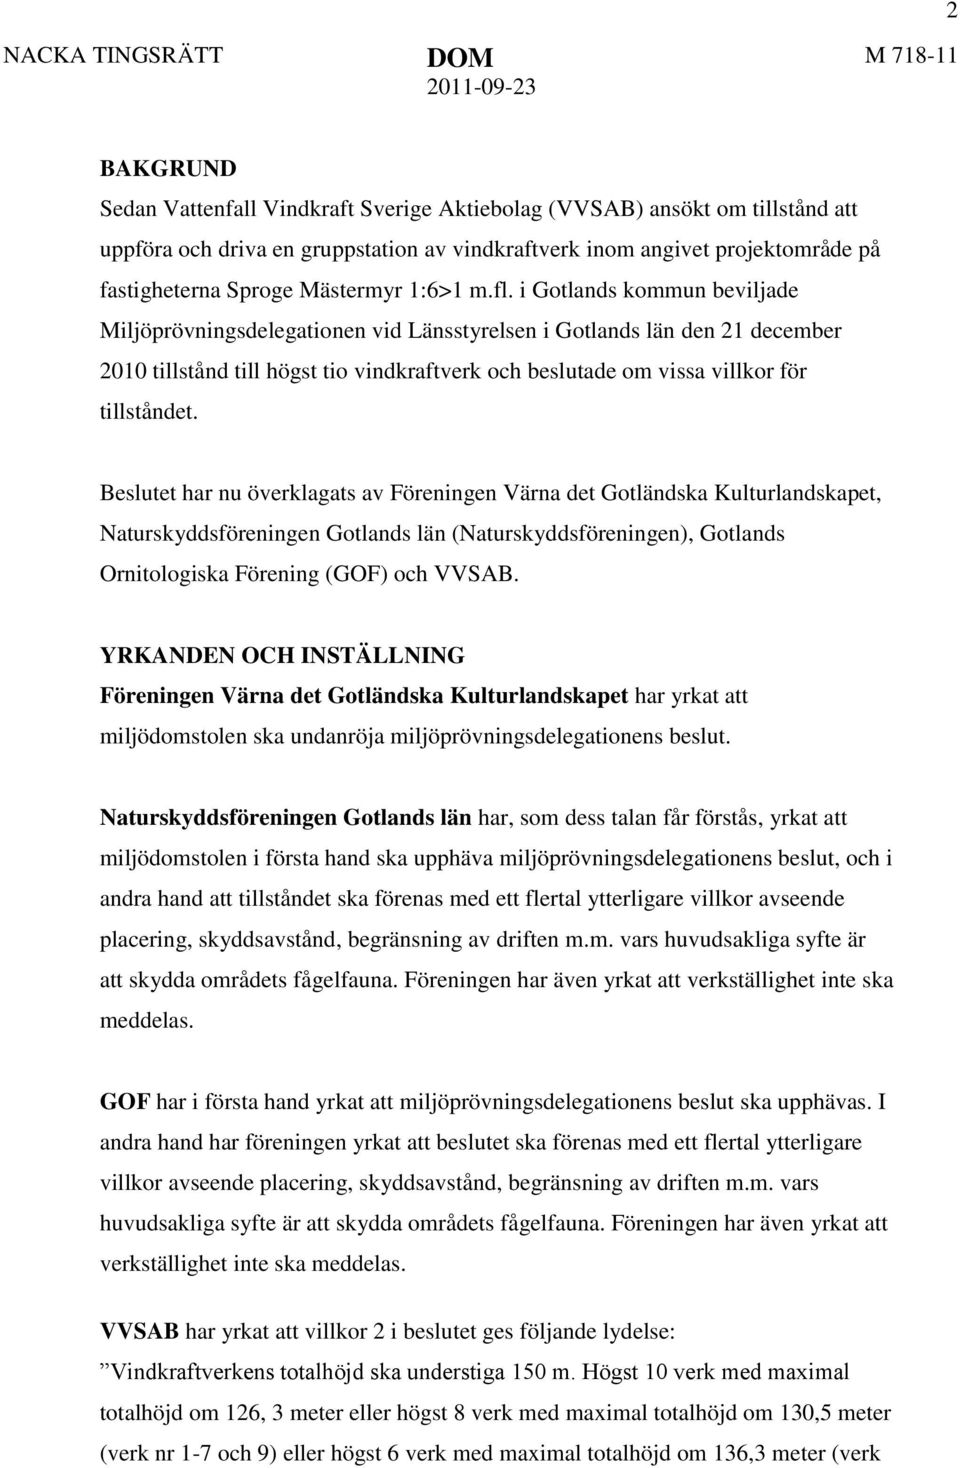 i Gotlands kommun beviljade Miljöprövningsdelegationen vid Länsstyrelsen i Gotlands län den 21 december 2010 tillstånd till högst tio vindkraftverk och beslutade om vissa villkor för tillståndet.